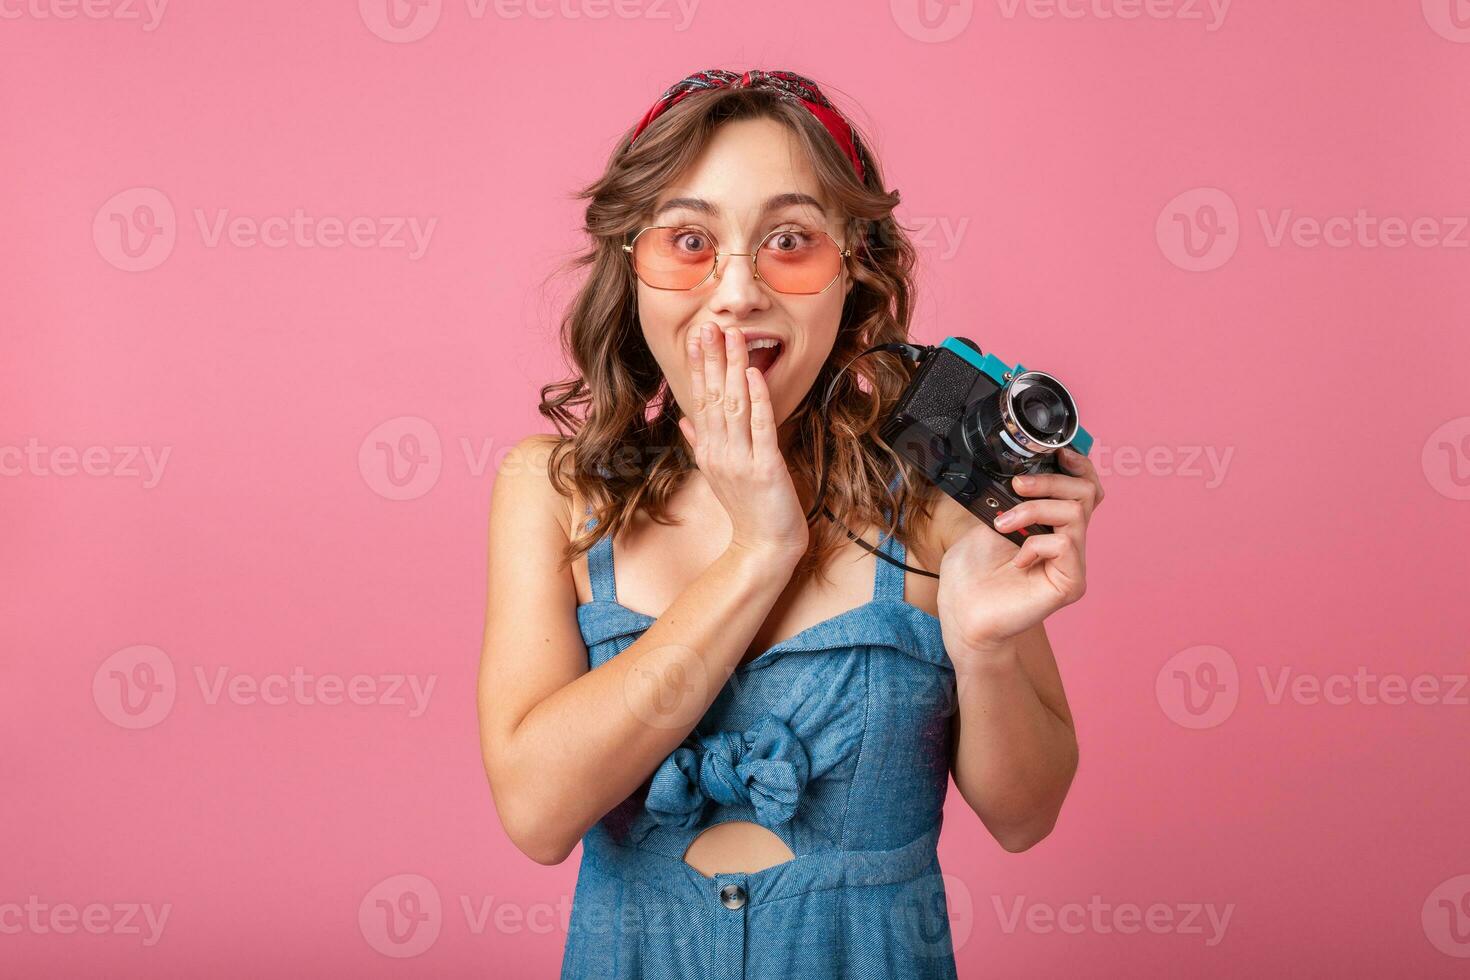 attraktiv lächelnd glücklich Frau posieren mit Jahrgang Foto Kamera